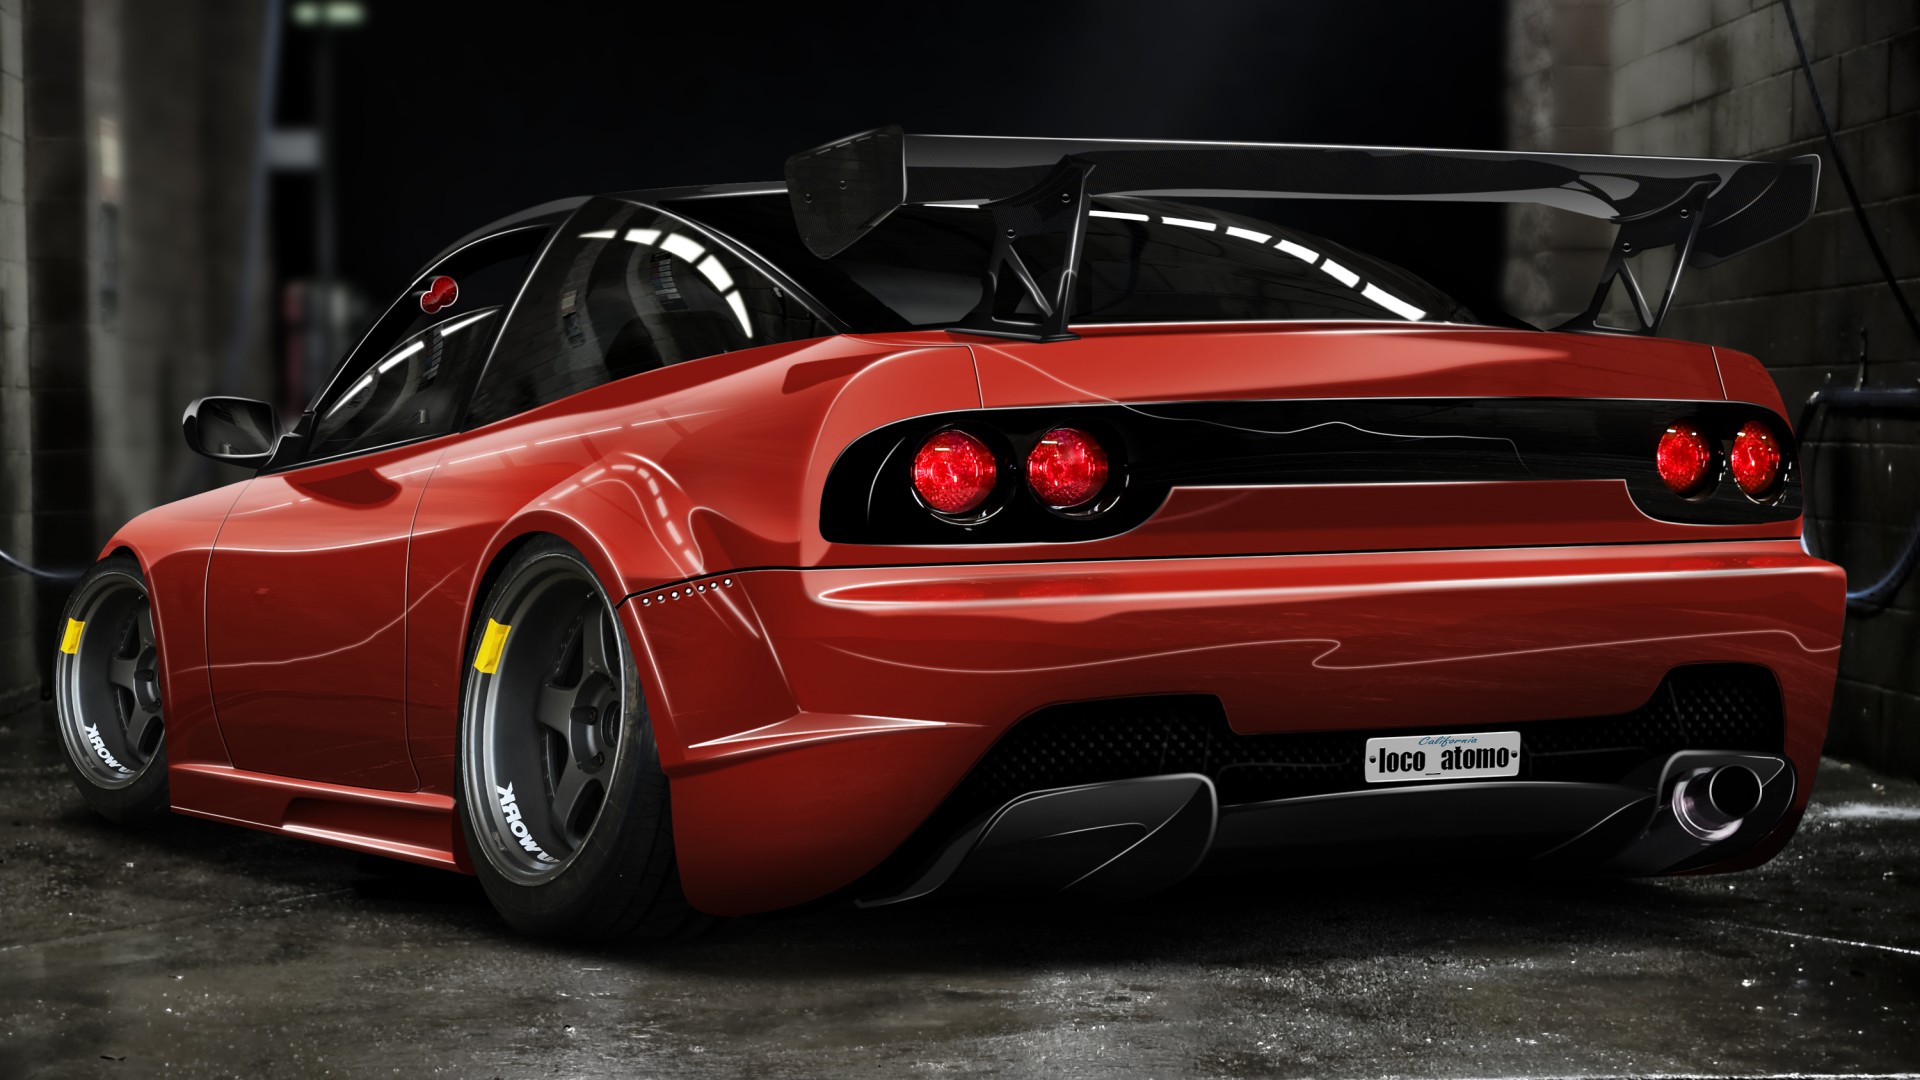 Xe Nissan 240sx đỏ tuning là một tác phẩm nghệ thuật đích thực. Bức hình nền này sẽ khiến bất kỳ ai yêu đam mê tốc độ và xe hơi đều phải trầm trồ ngưỡng mộ. Hãy tải về và cập nhật màn hình máy tính của bạn với bức hình nền siêu đẹp này ngay. 